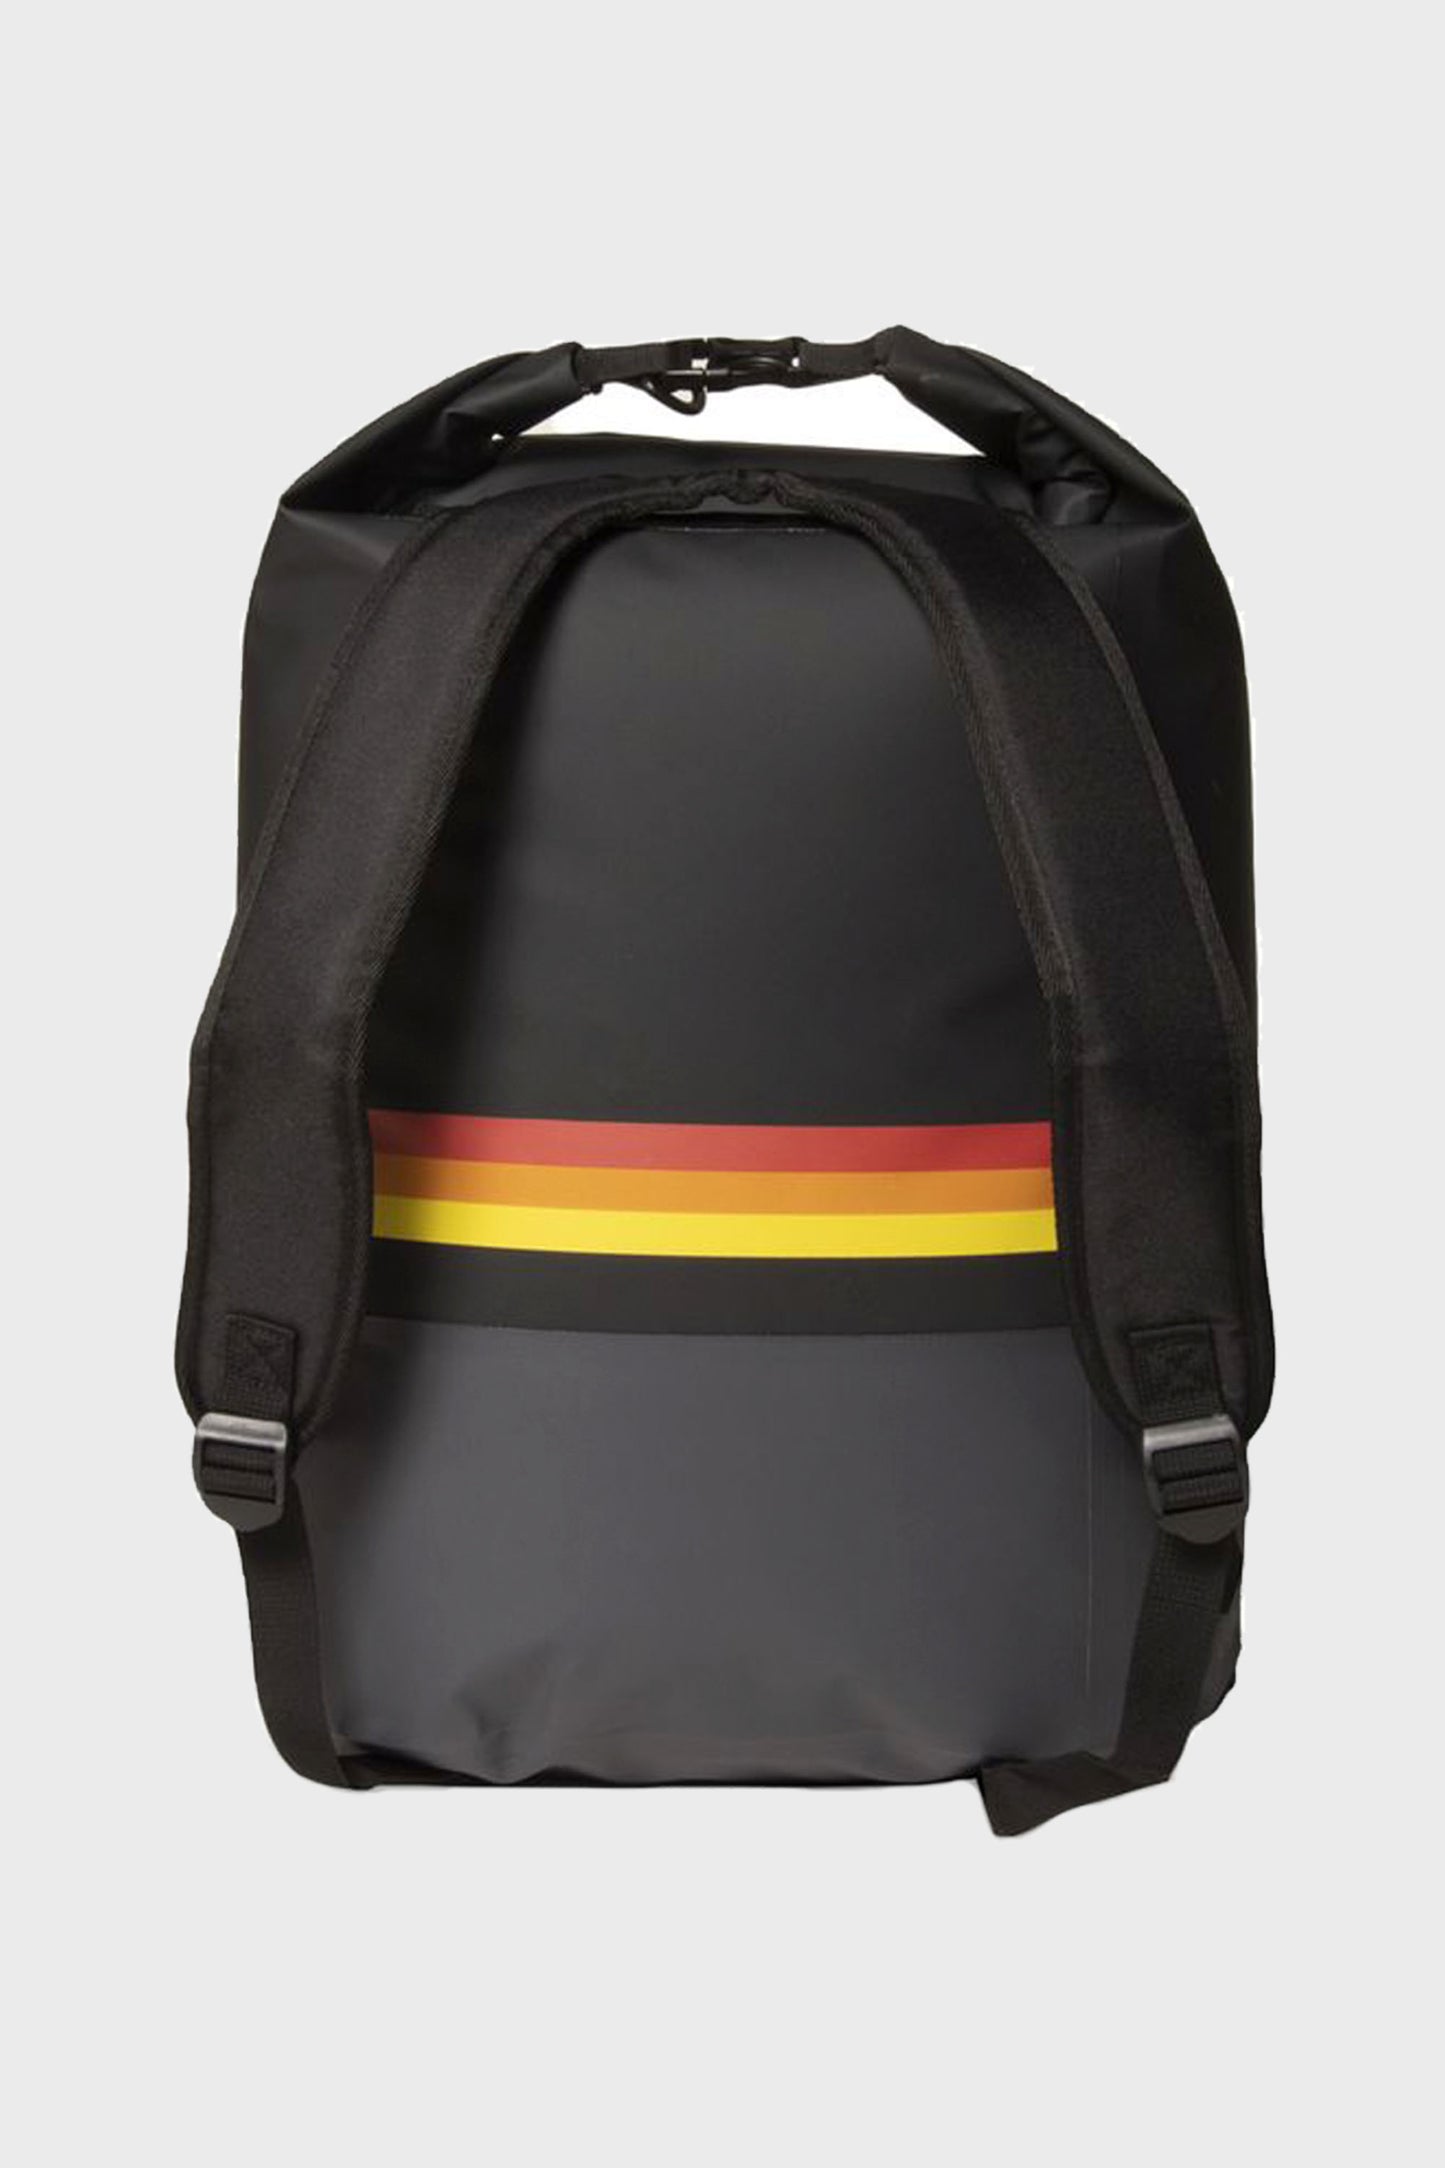 
                  
                       pukas-surf-shop-vissla-bag-7-seas-35L-dry-backpack
                  
                